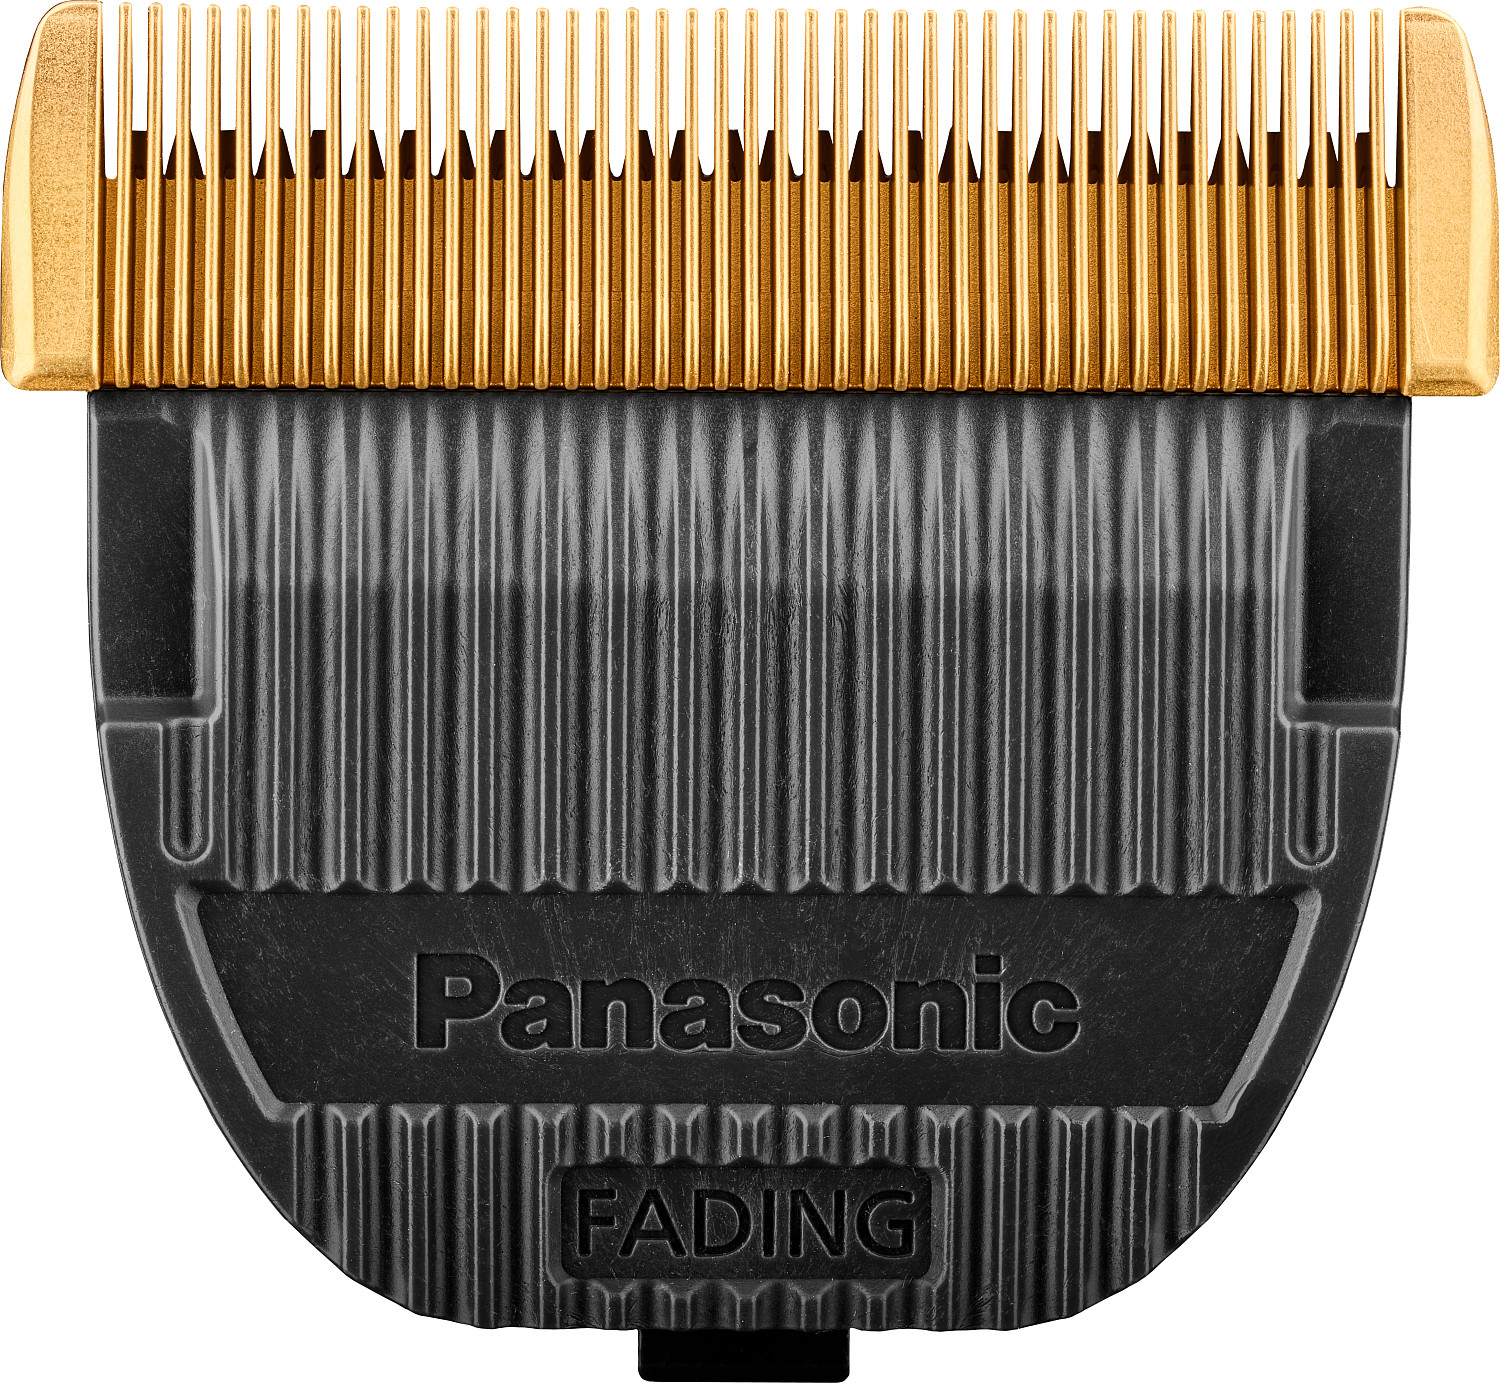  Panasonic Scherkopf Fading Blade WER9930Y für ER-DGP86 